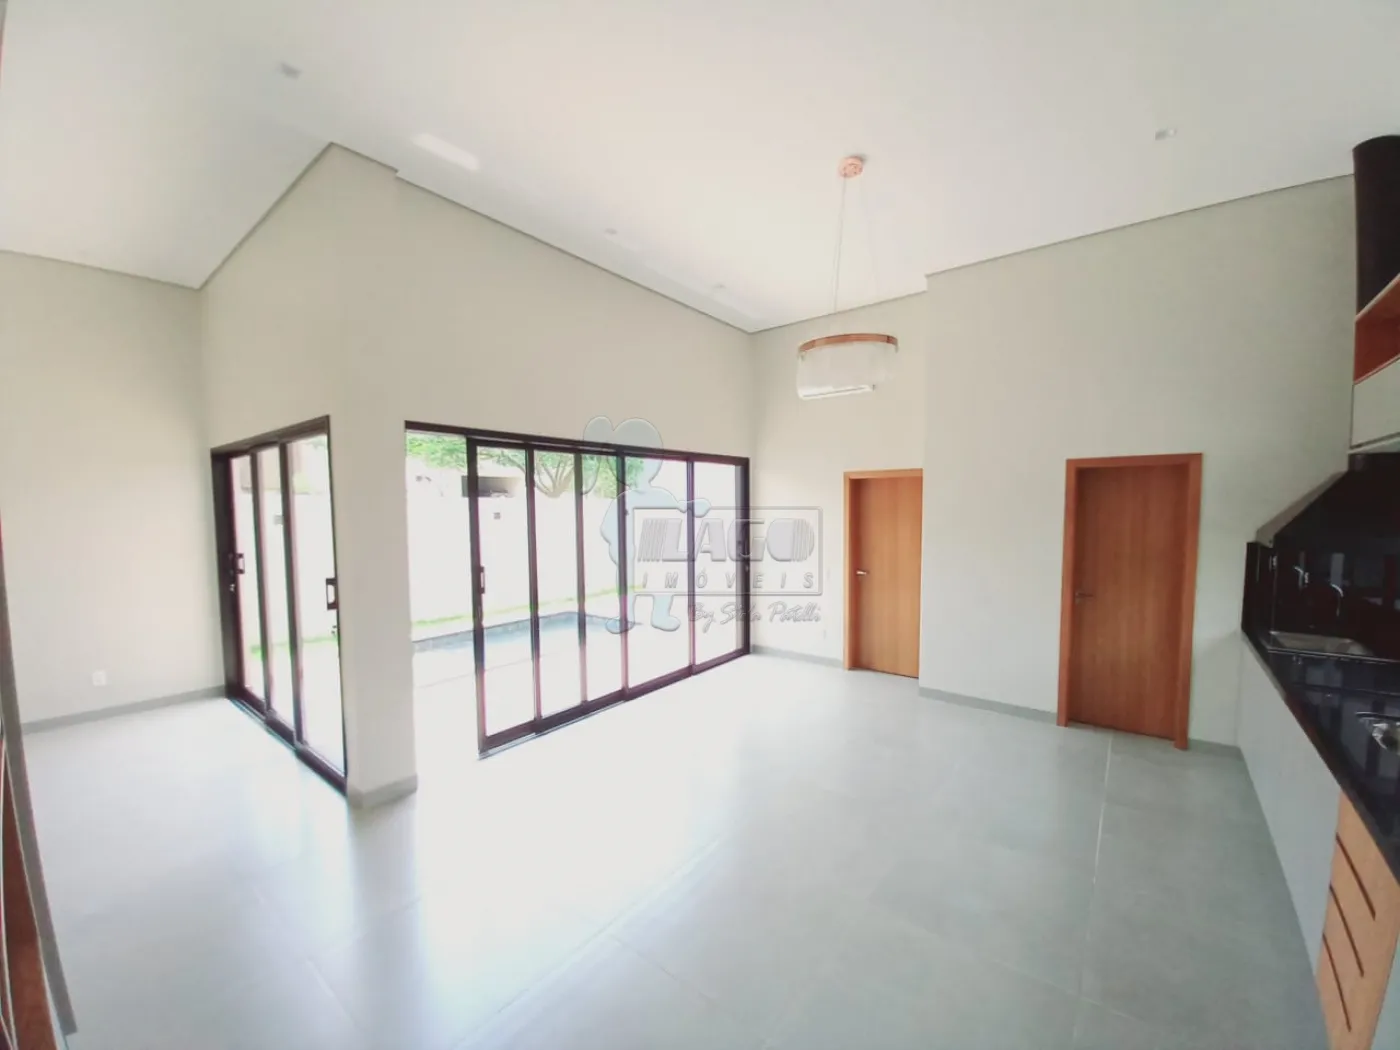 Comprar Casa condomínio / Padrão em Ribeirão Preto R$ 1.173.000,00 - Foto 3